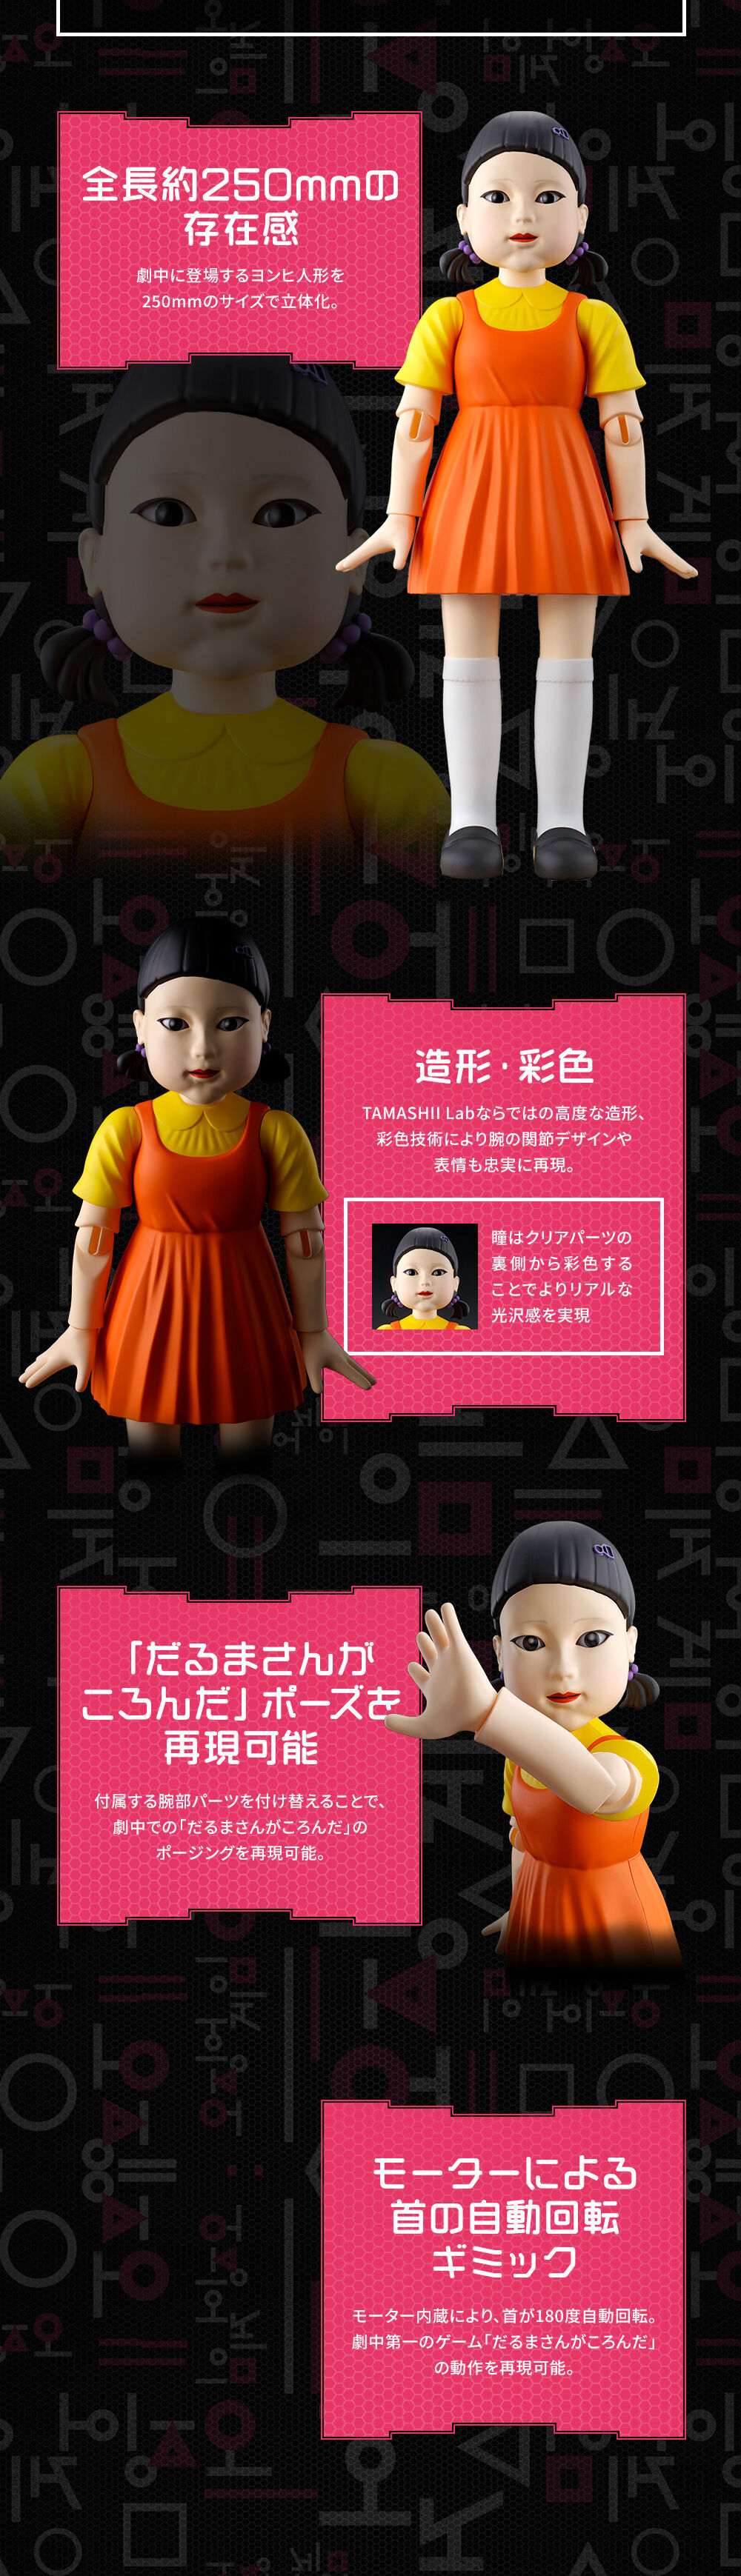 TAMASHII Lab ヨンヒ人形 | フィギュア・プラモデル・プラキット